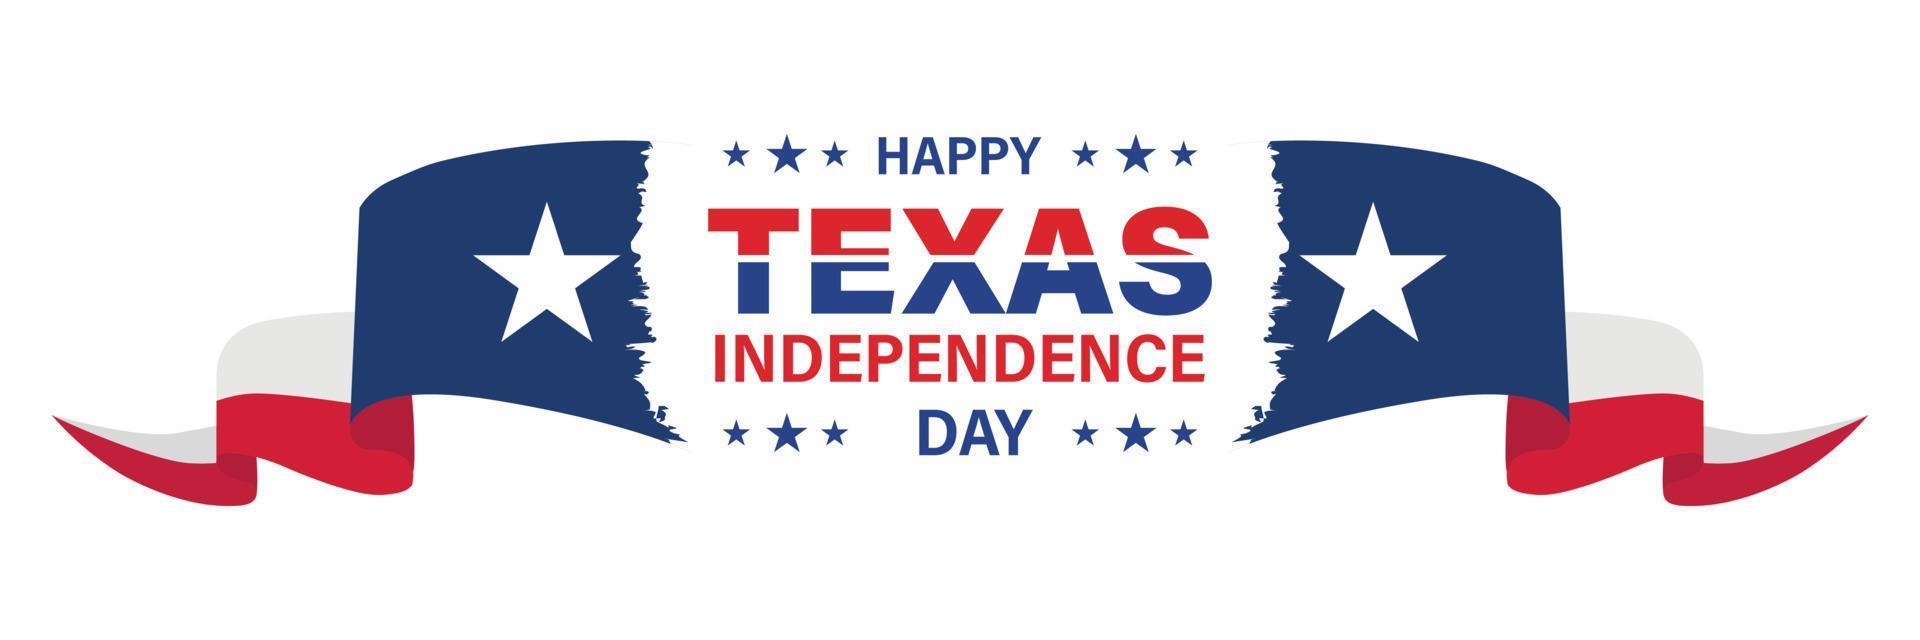 maart 2, Texas onafhankelijkheid dag. achtergrond, poster, kaart, banier vector illustratie